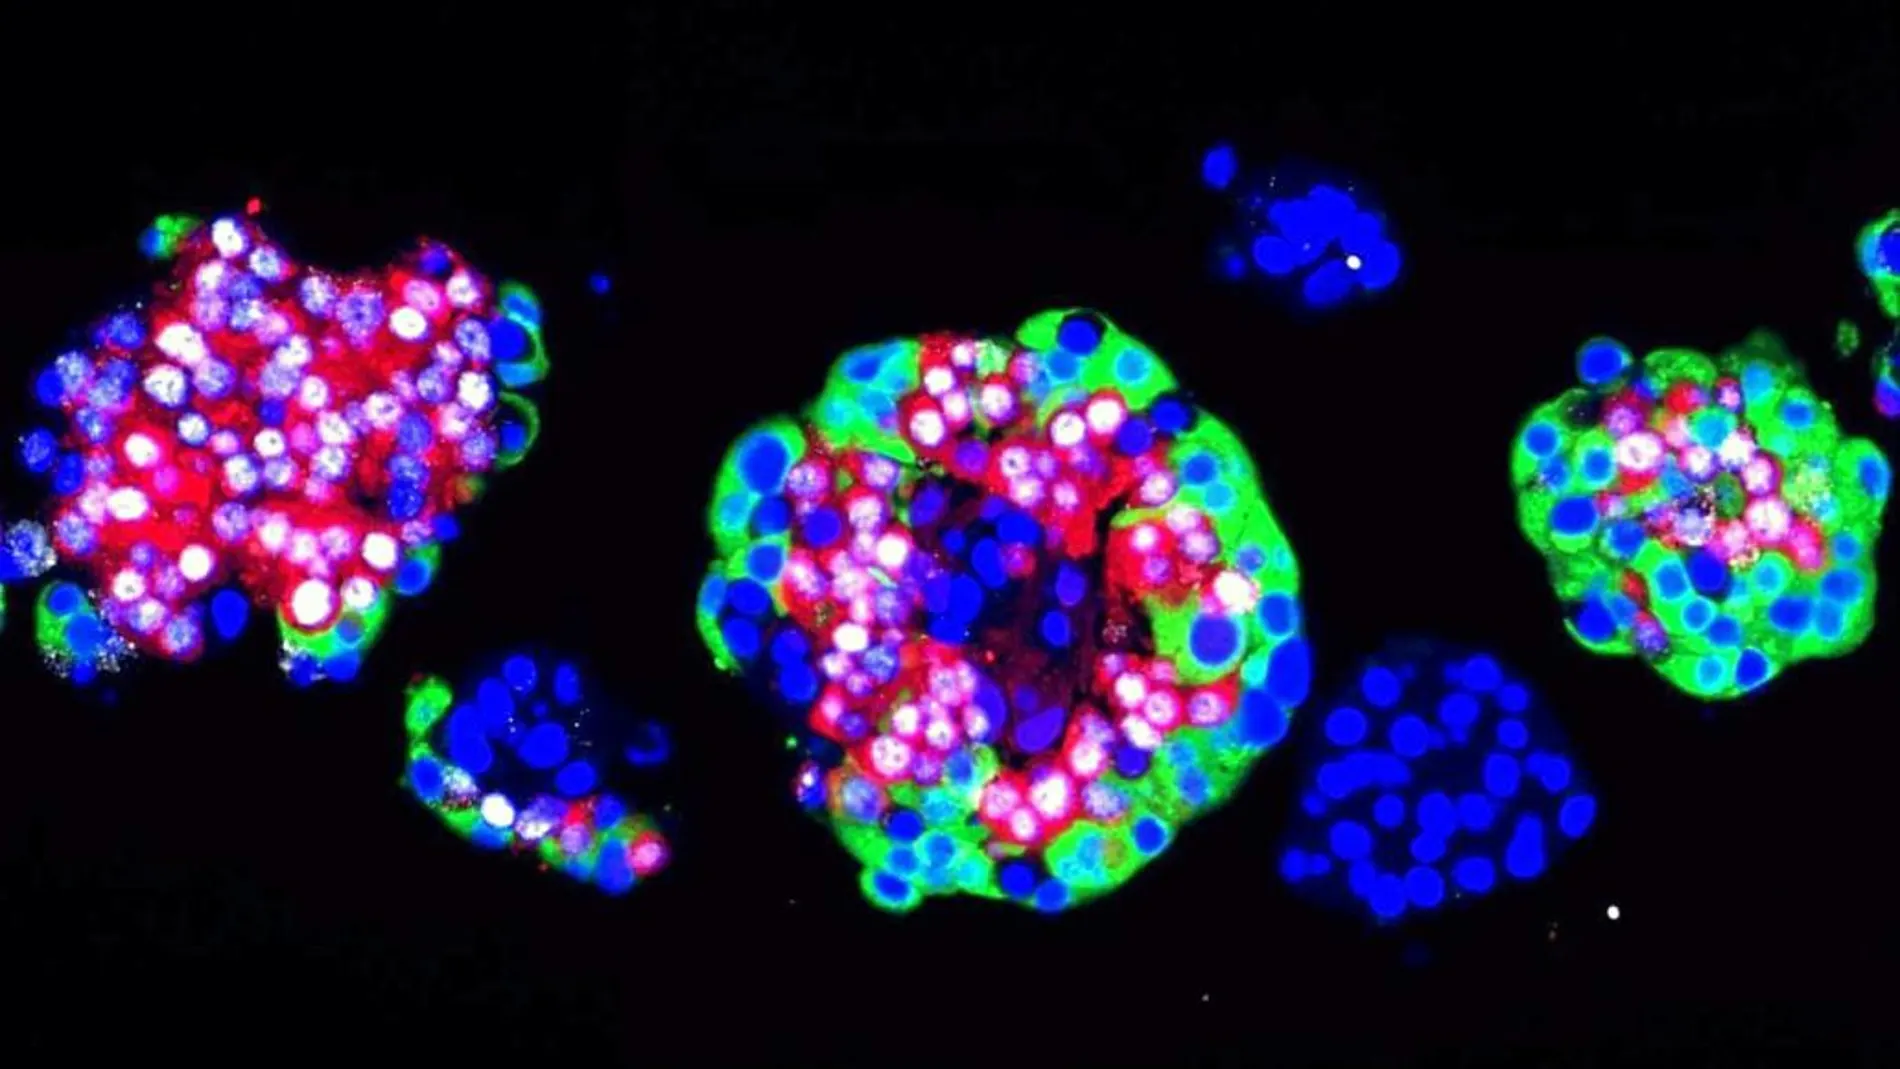 La artemisinina podría utilizarse para reemplazar las células beta destruidas del páncreas del diabético y sustituirlas con nuevas células productoras de insulina